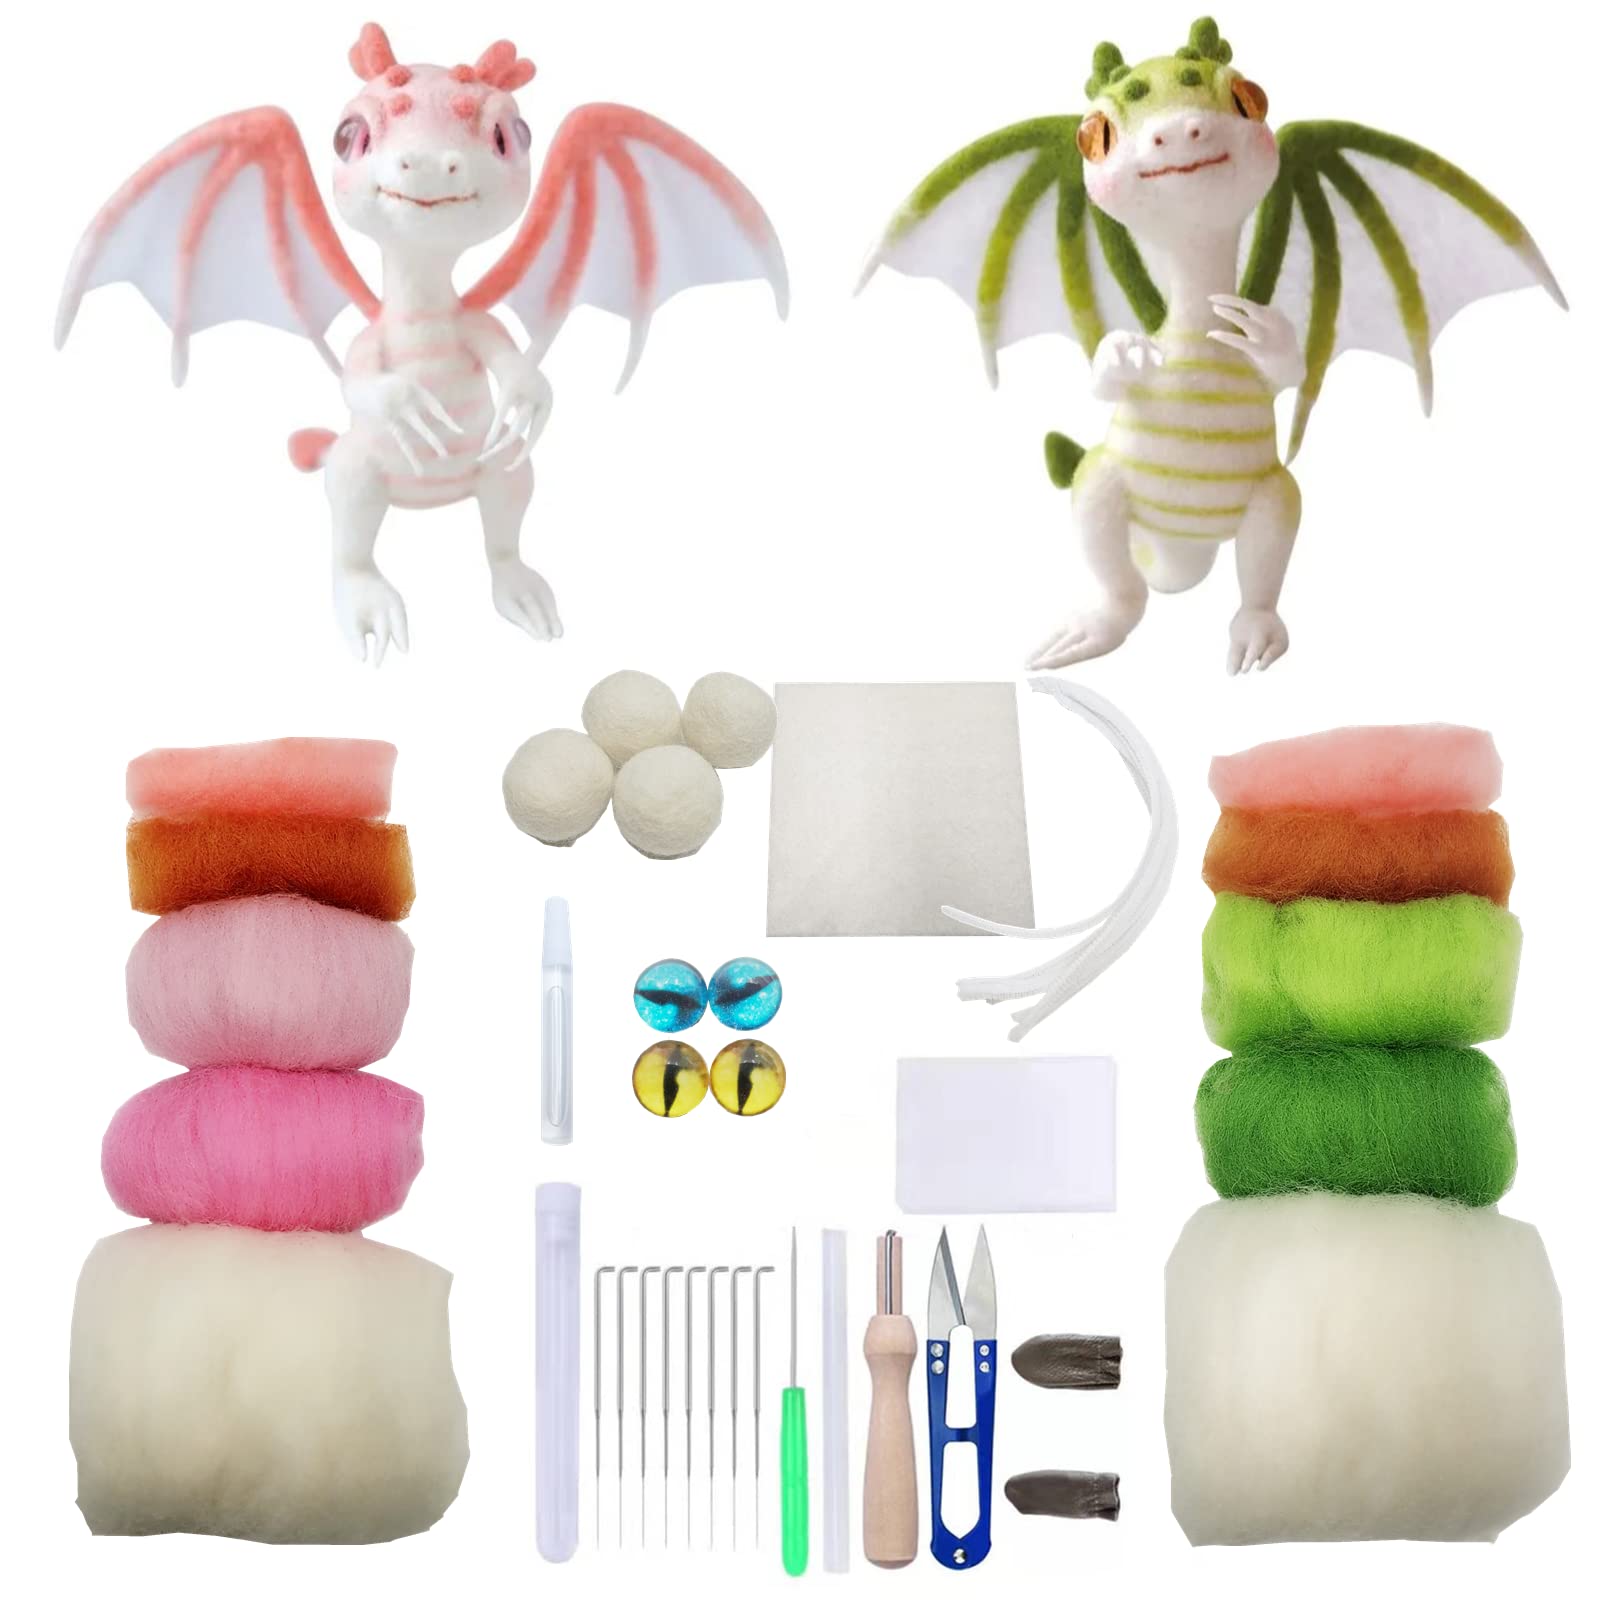 Make Your Own Dragon Craft Kit / DIY Dragon Craft Kit / Kids Craft Kit /  Little Kids Dragon Craft / Dragon Paper Craft Kit